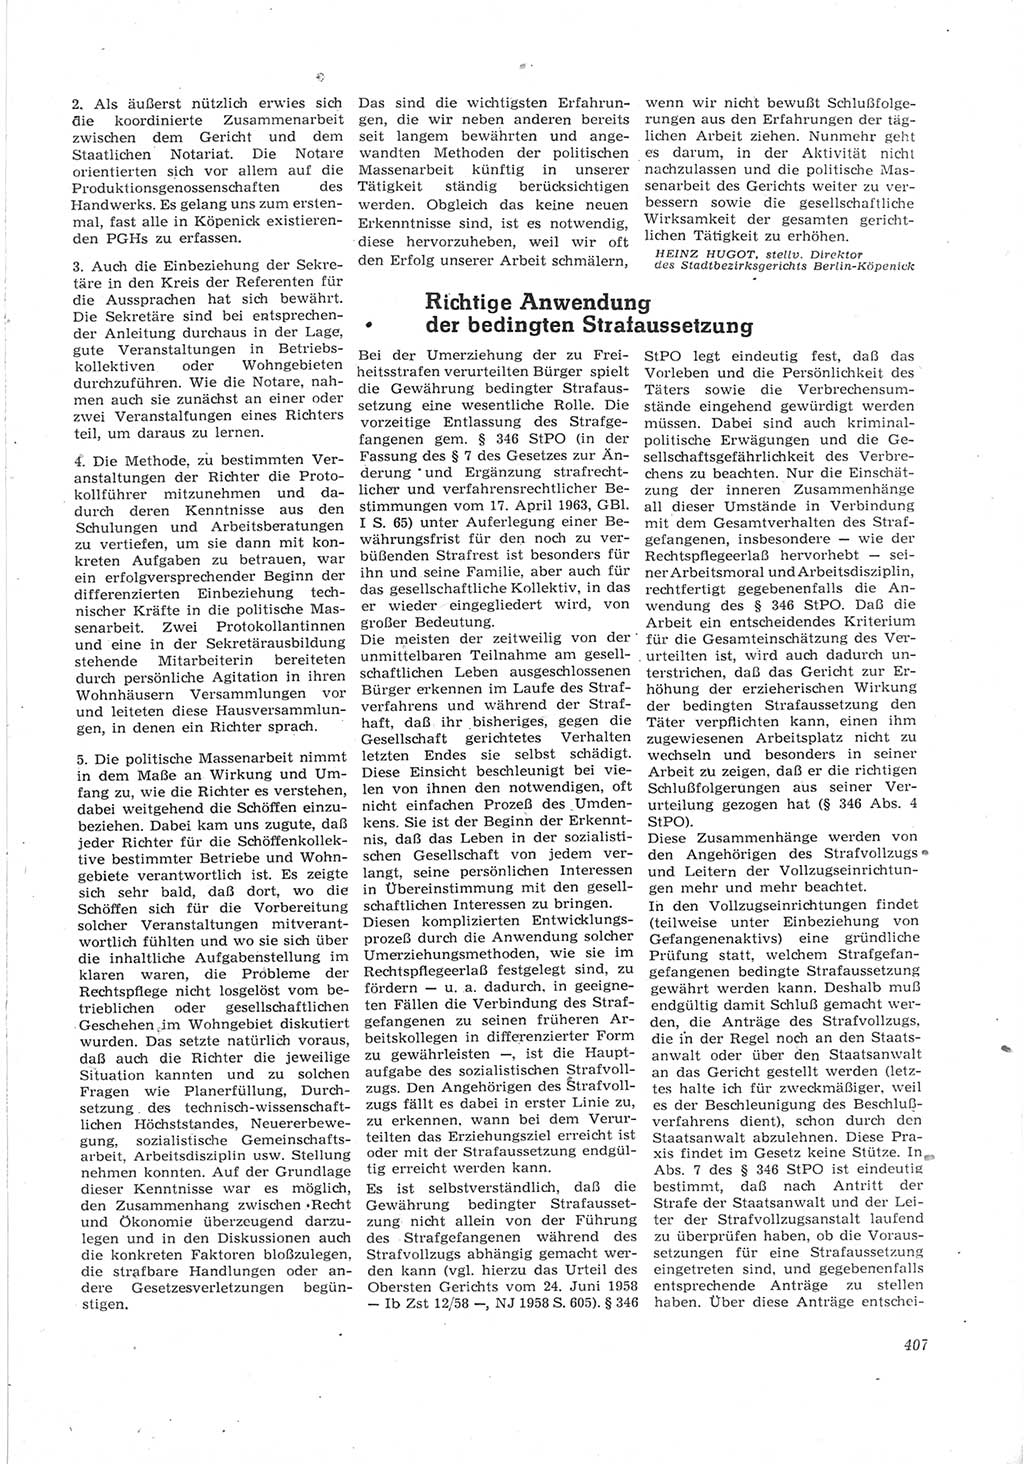 Neue Justiz (NJ), Zeitschrift für Recht und Rechtswissenschaft [Deutsche Demokratische Republik (DDR)], 17. Jahrgang 1963, Seite 407 (NJ DDR 1963, S. 407)